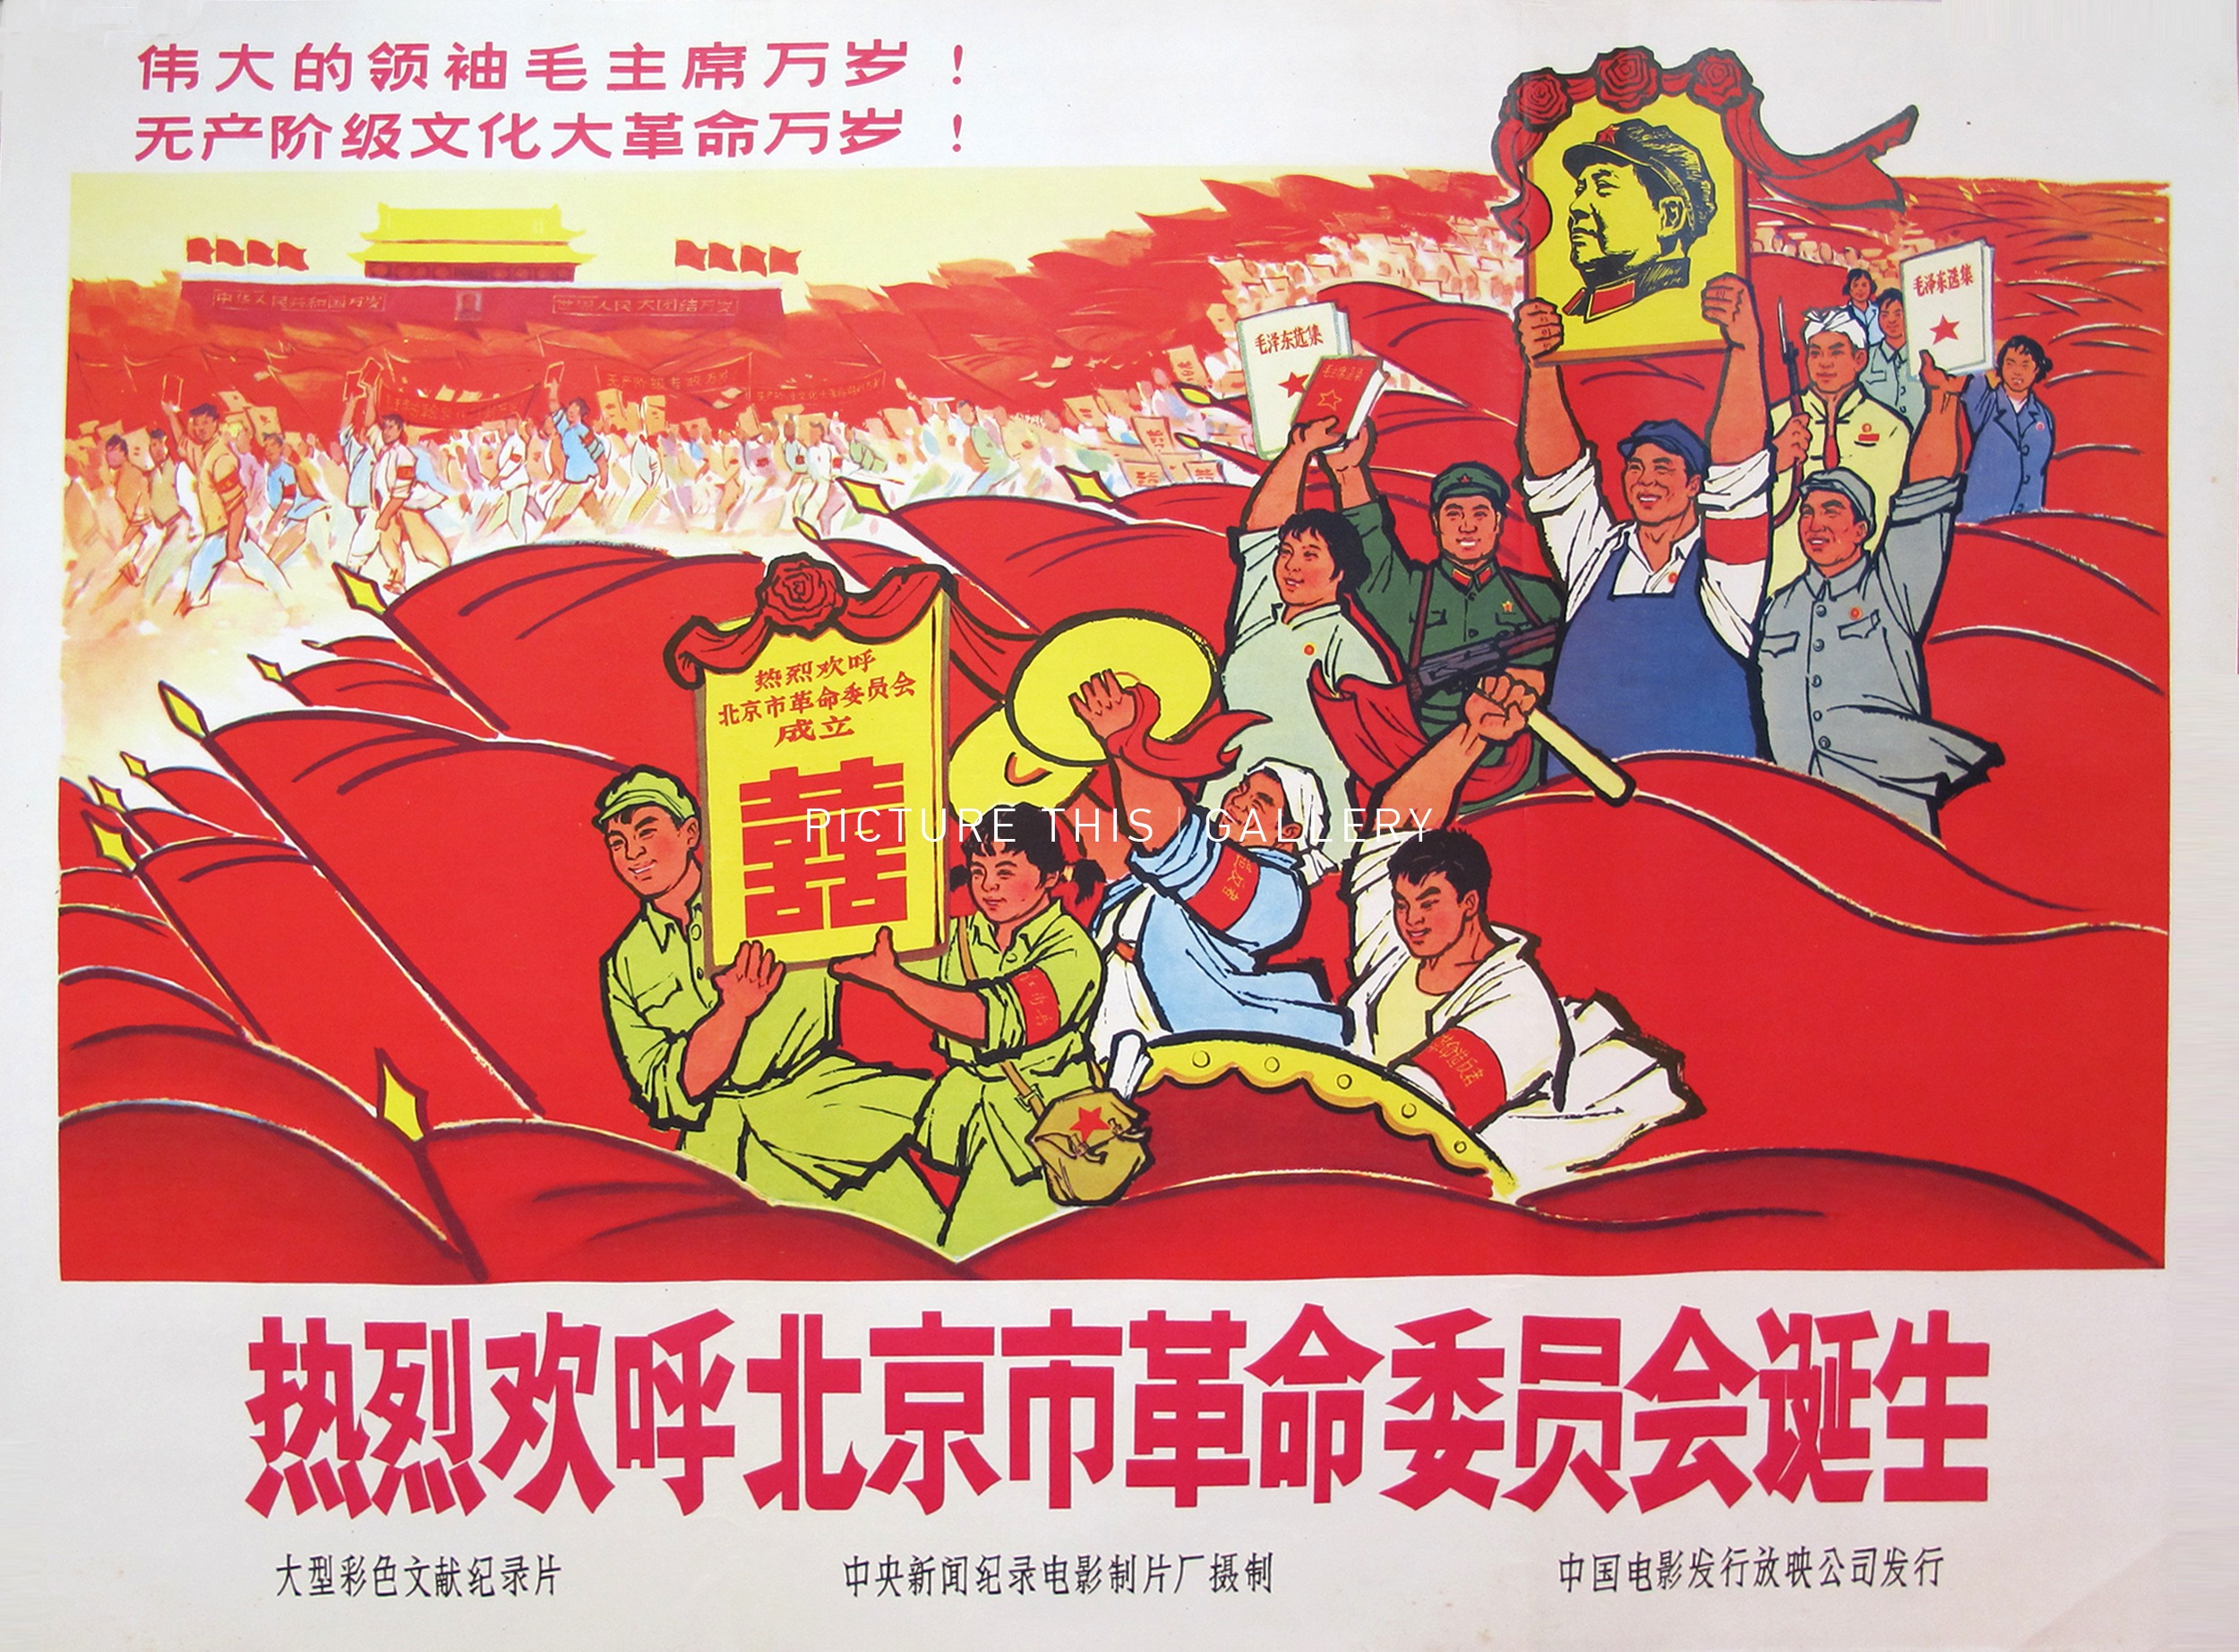 Слоган азии. Китайские плакаты культурной революции Мао дзе Дун. Мао Цзэдун плакаты культурной революции. Китайские плакаты Мао Цзэдун. Мао дзе Дун культурная революция.